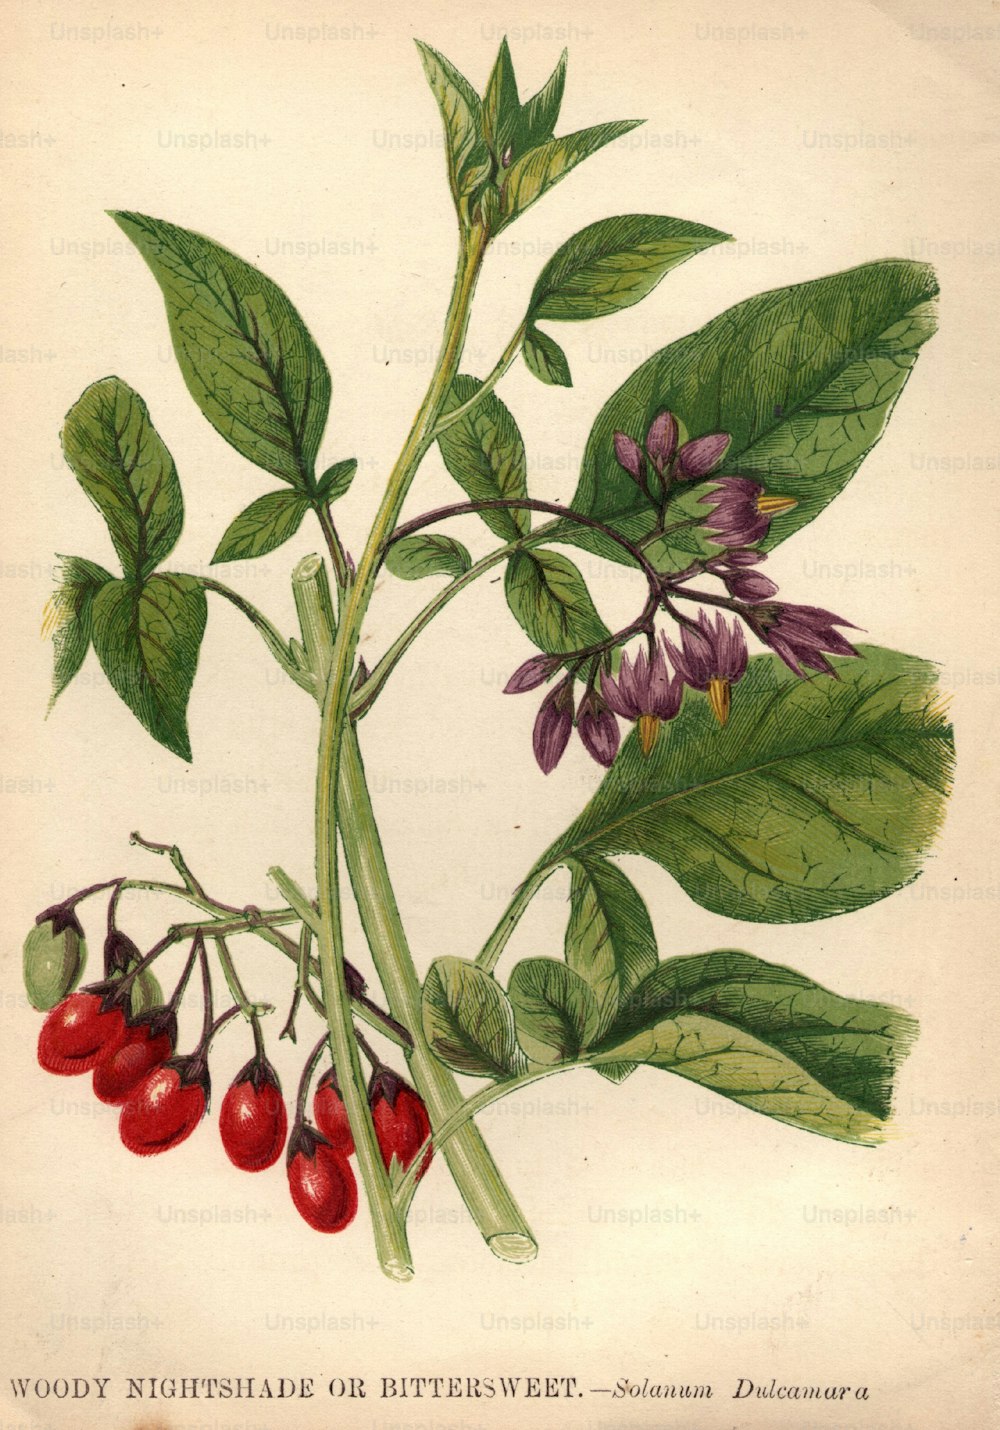 um 1800: Solanum dulcamura, holziger Nachtschatten oder Bittersüß.  (Foto von Hulton Archive / Getty Images)